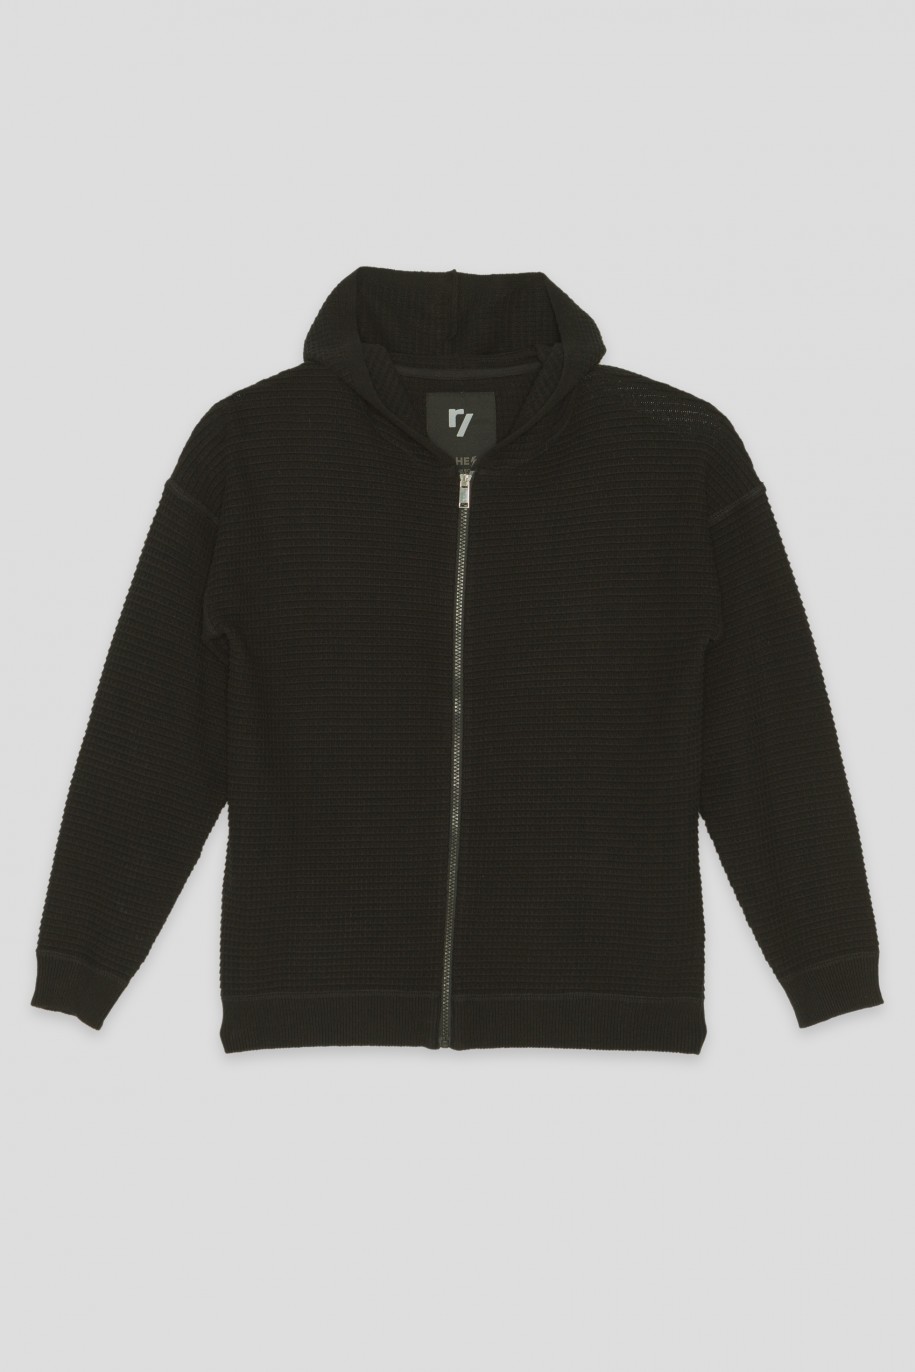 Czarny rozpinany sweter z kapturem - 36590